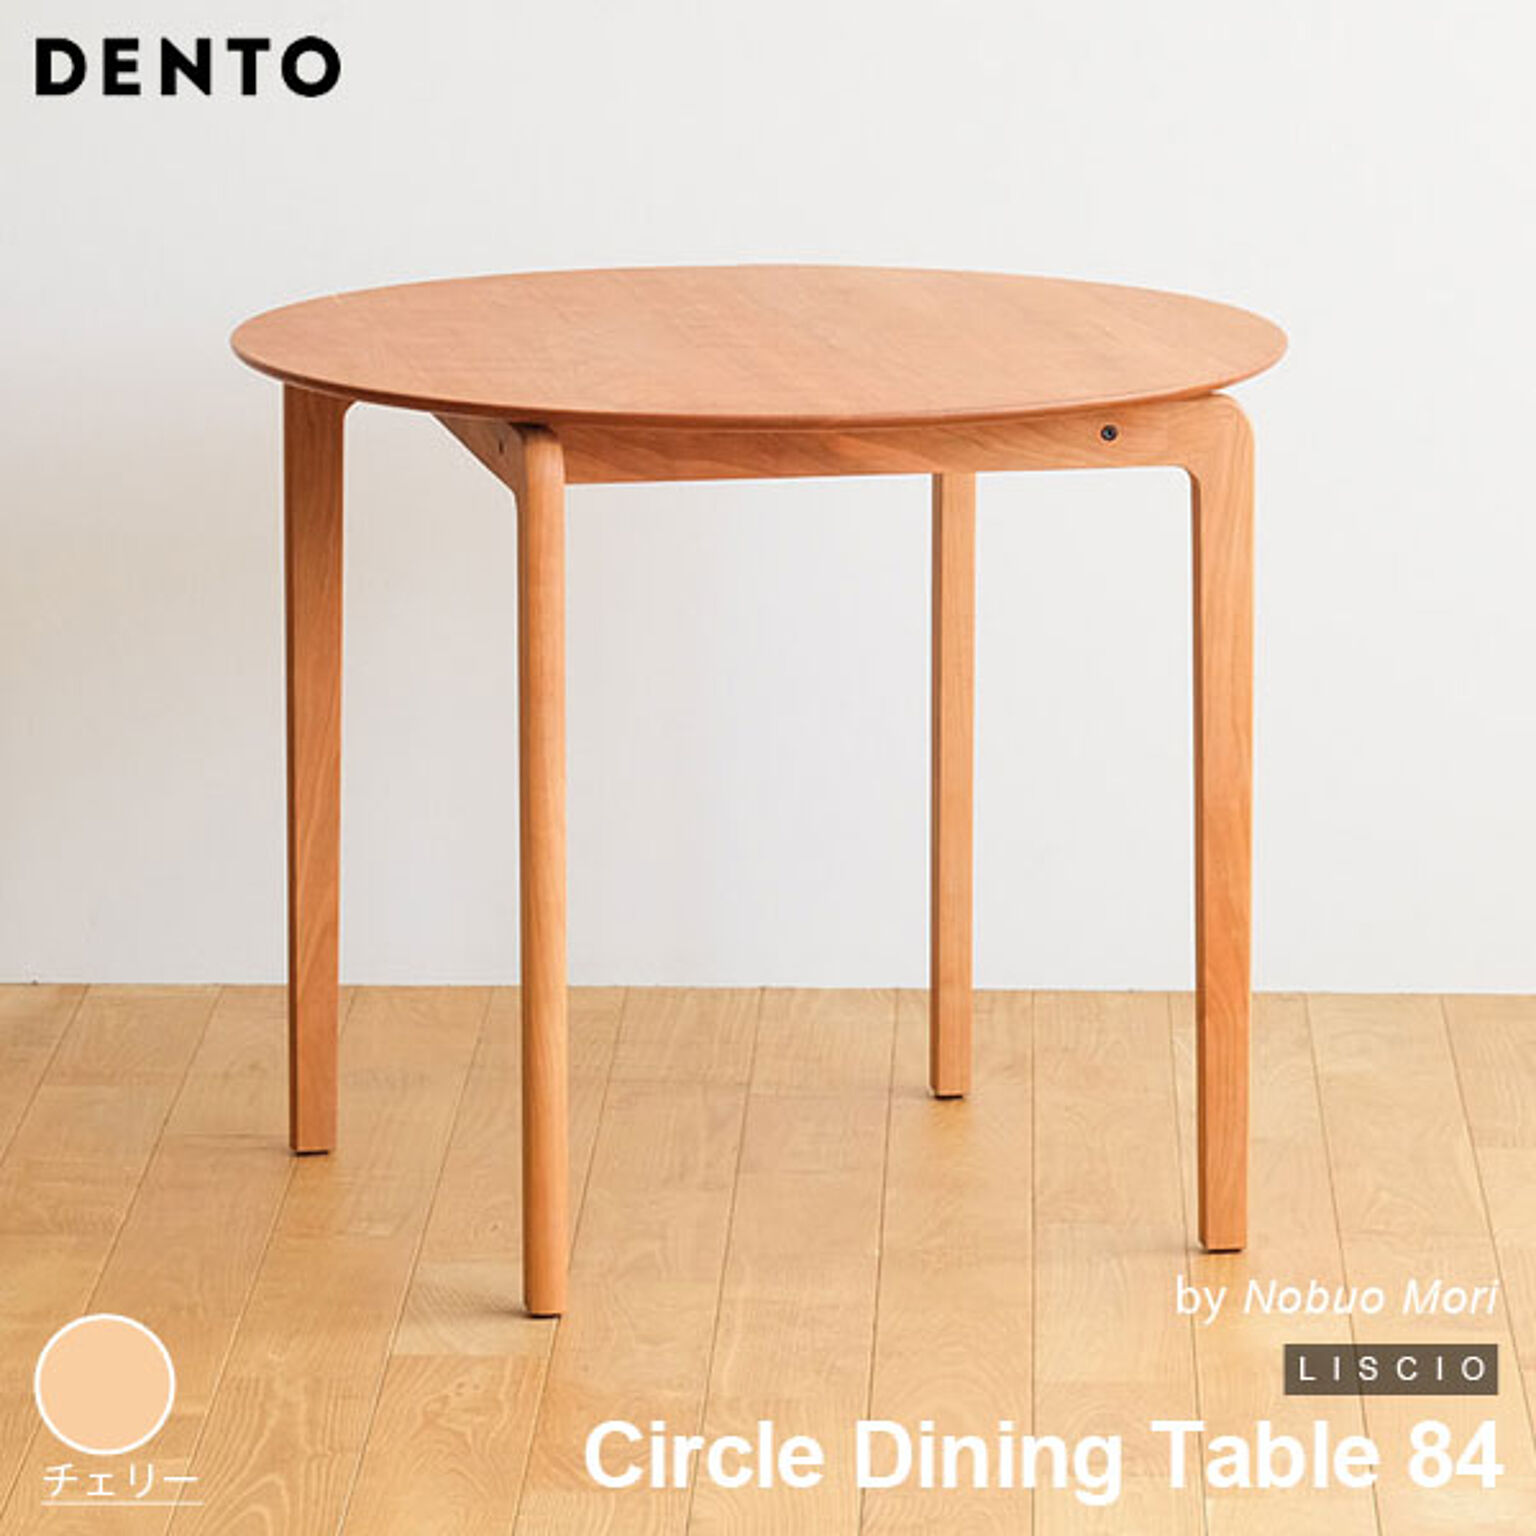 ダイニングテーブル 木製 サークルダイニングテーブル 円形 LISCIO Circle Dining Table 84 リッショ 木製 無垢 スタイリッシュ 北欧 ダイニング 日本製 